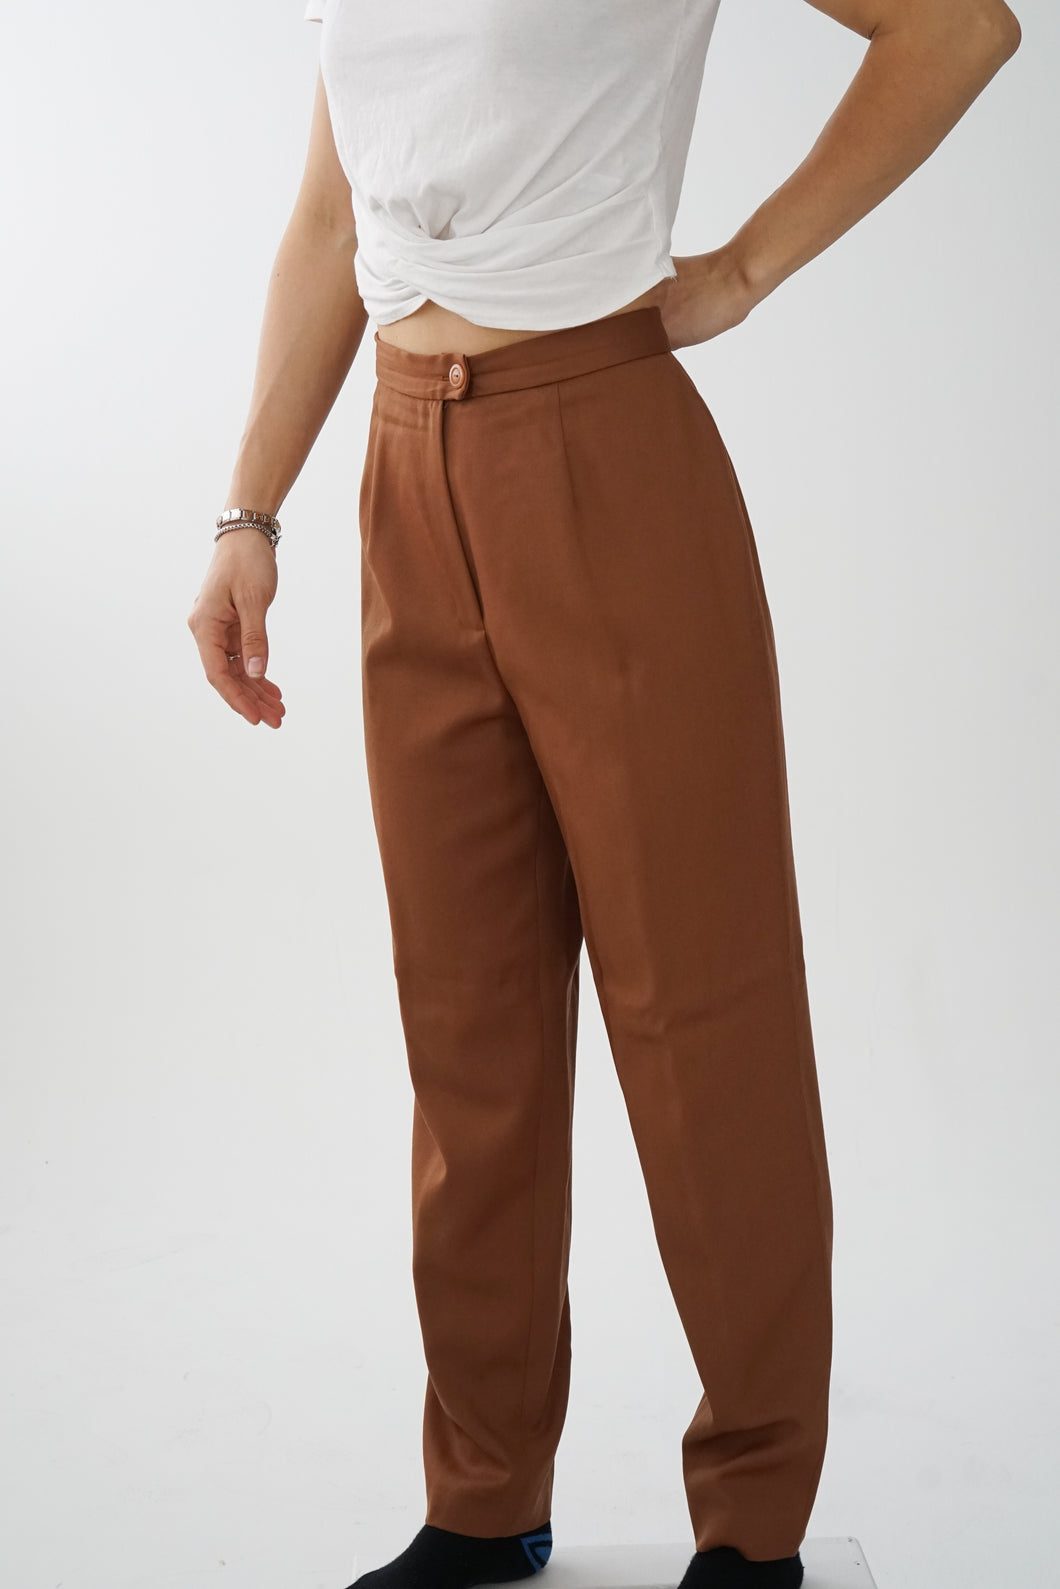 Pantalon classique brun clair en laine avec doublure Looks Collection taille M